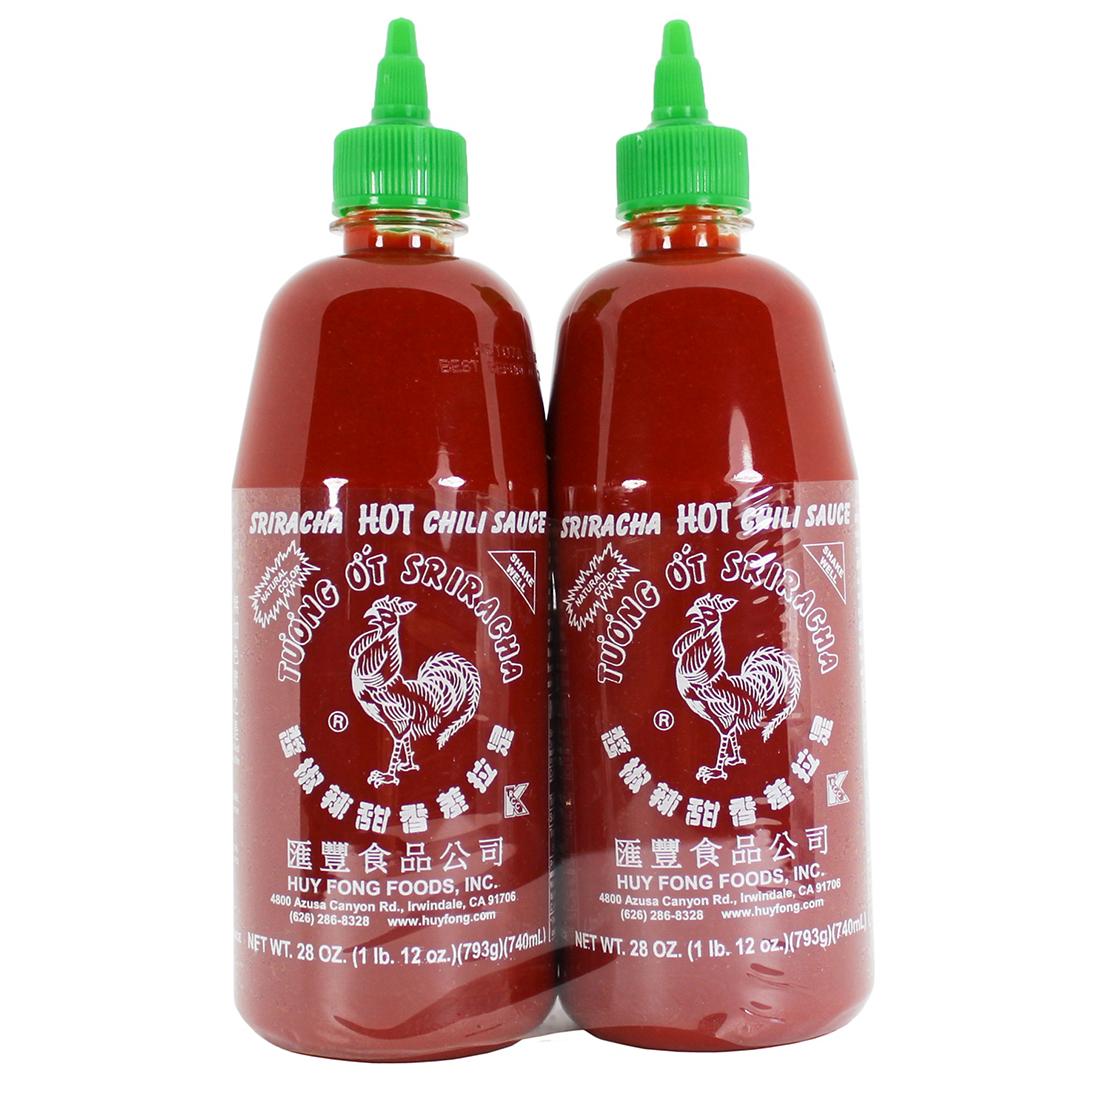 3. Sriracha